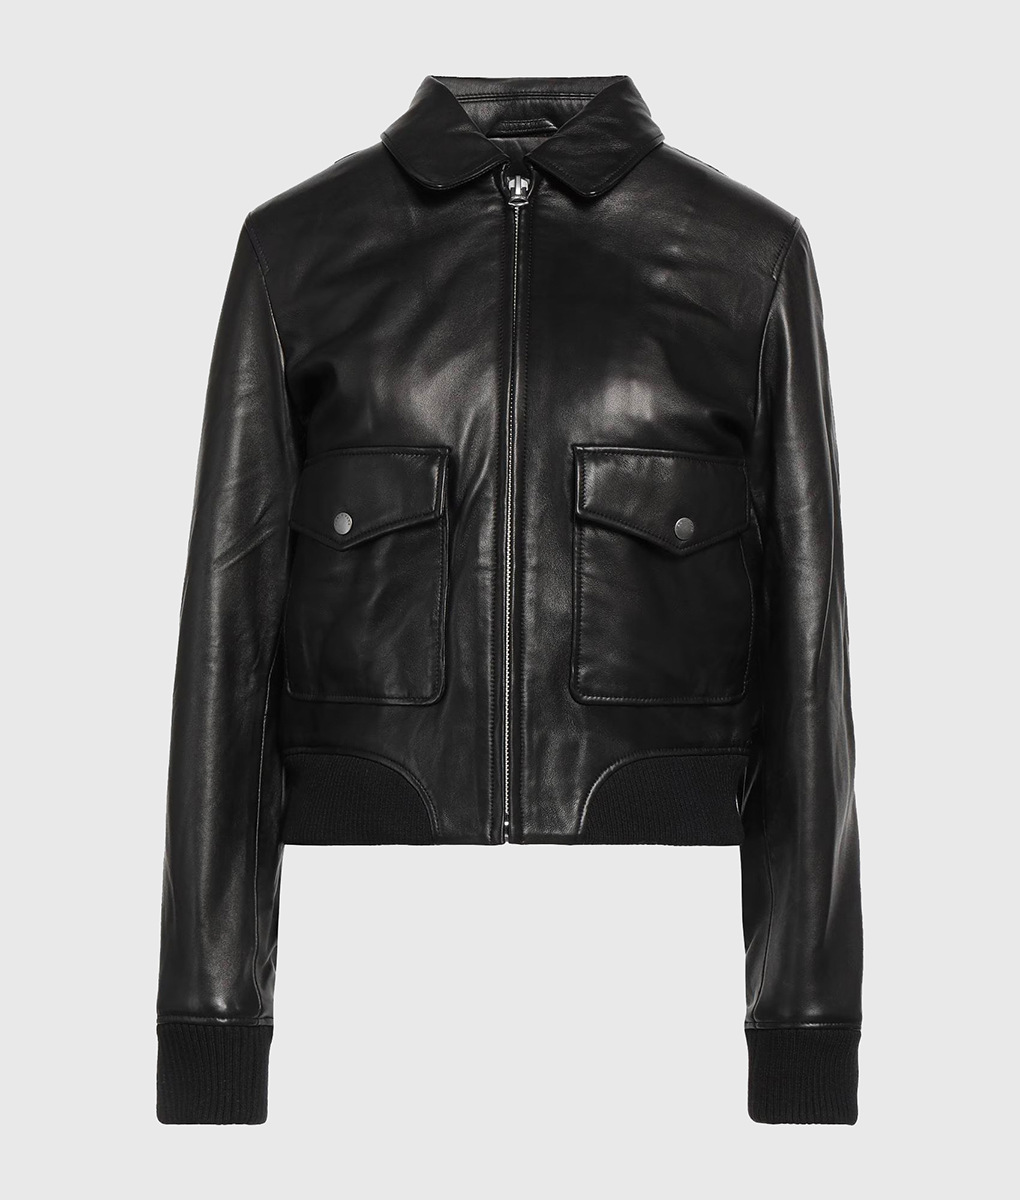 Jennifer Connelly Dark Matter (Daniela Vargas Dessen) Black Leather Bomber Jacket